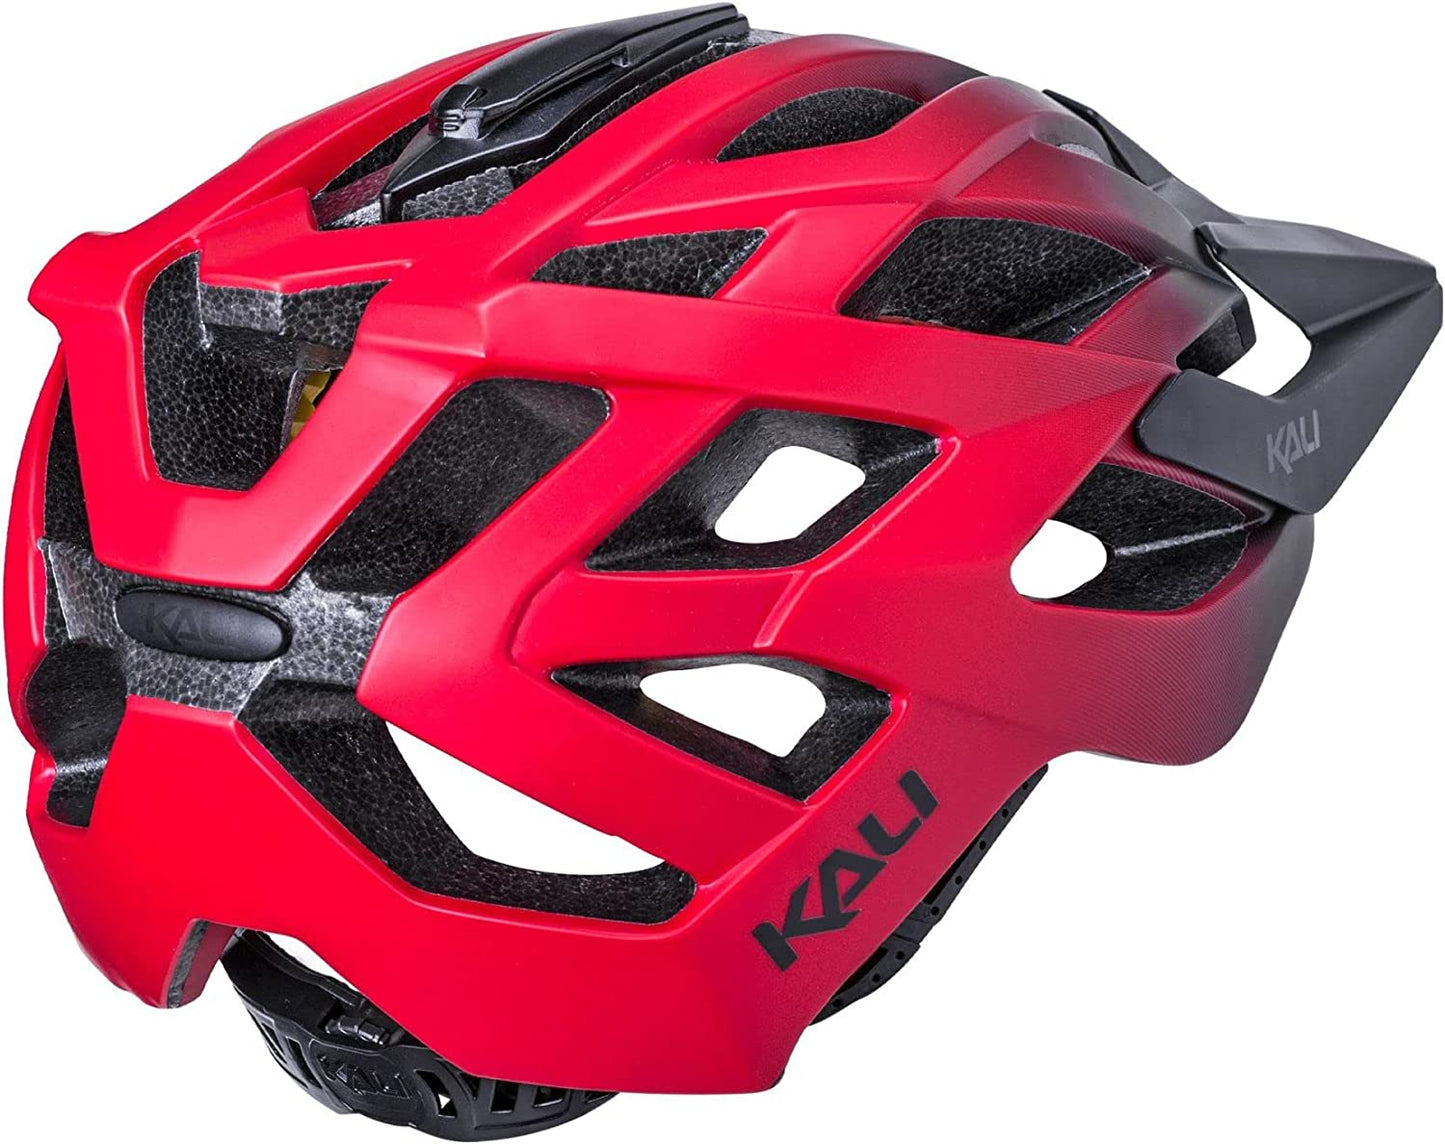 Lunati 2.0 Bicycle Helmet - Black/Red